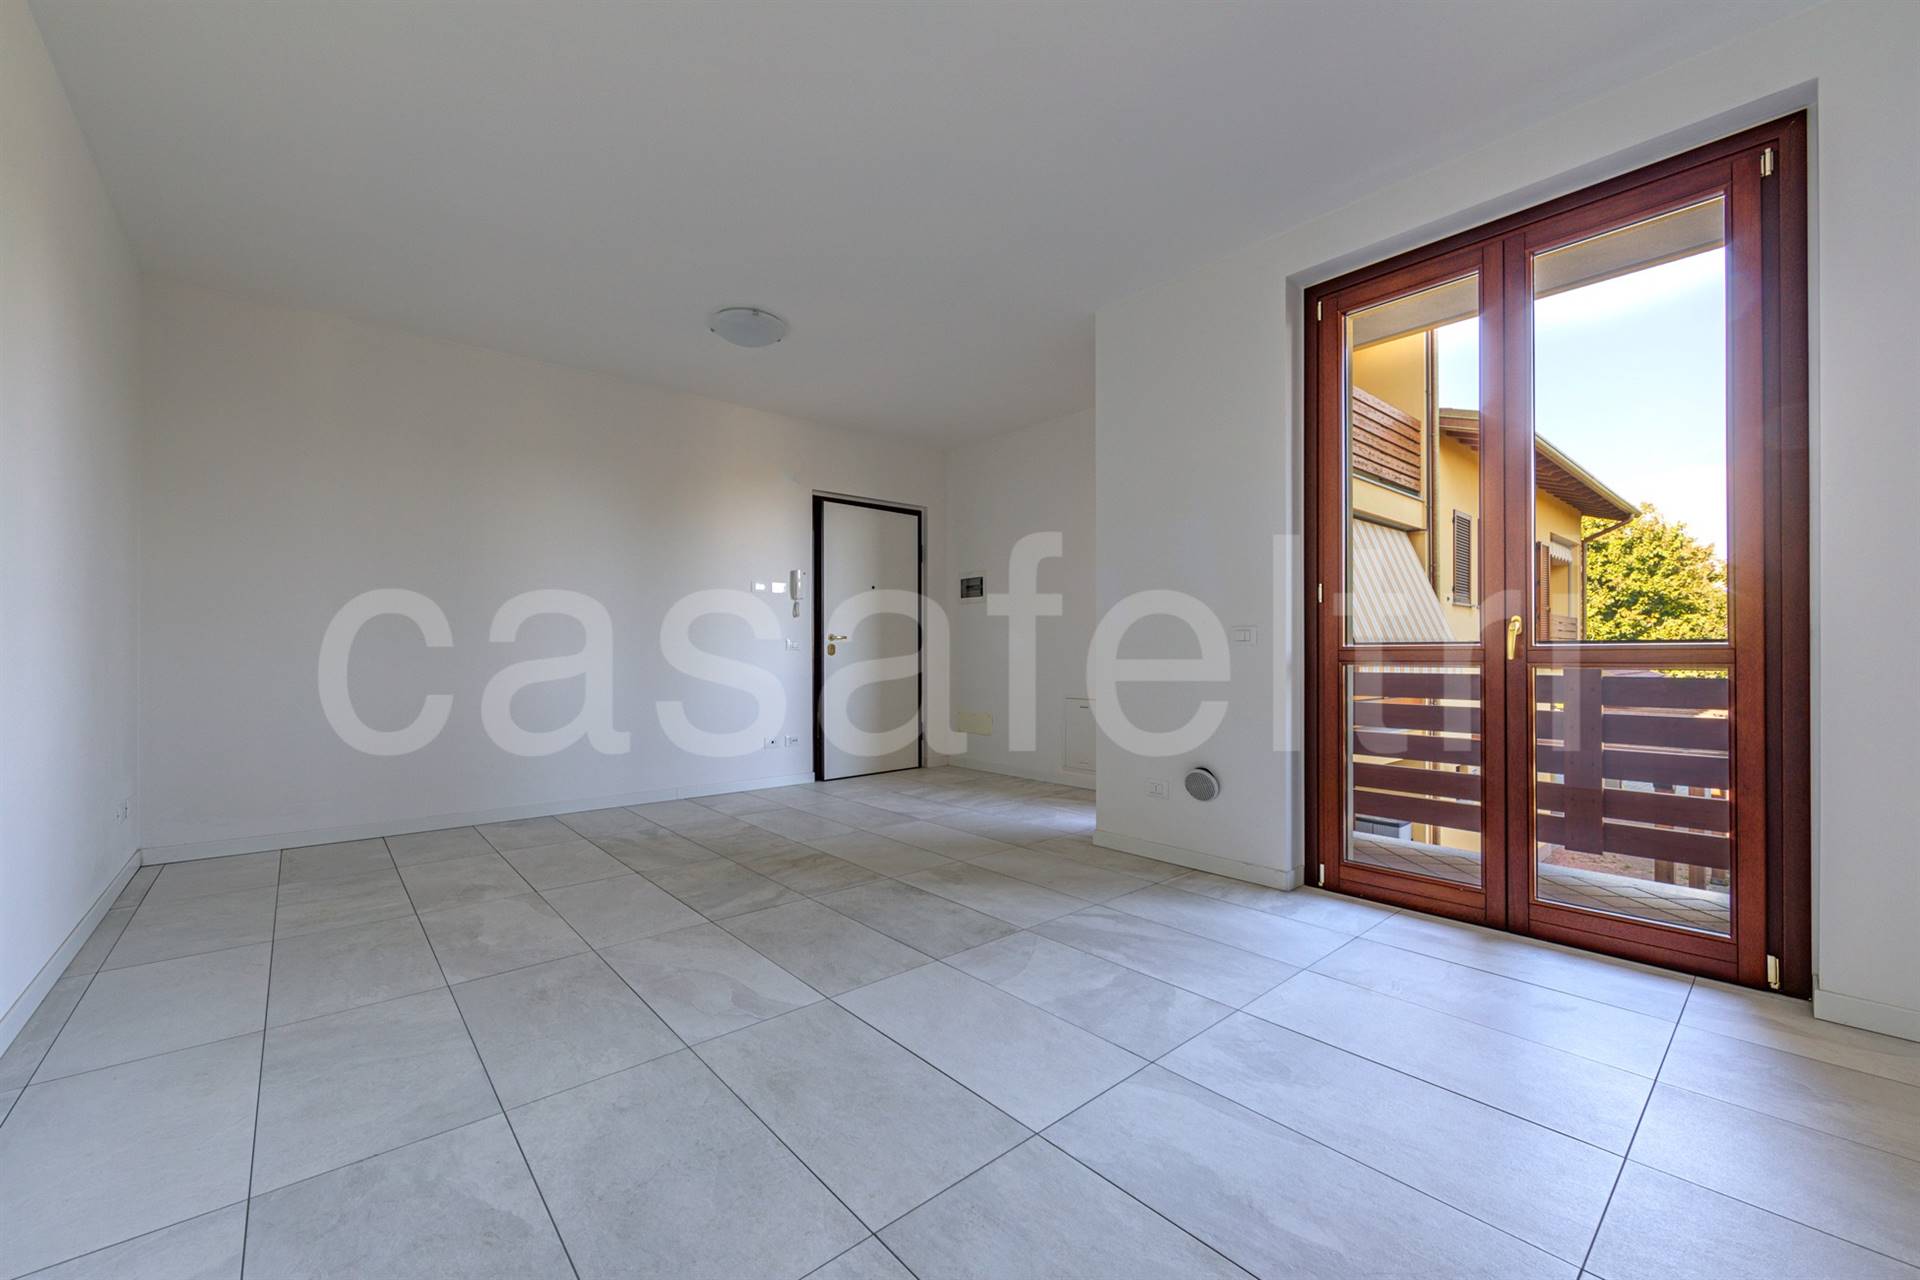 Appartamento in vendita a Sotto il Monte Giovanni XXIII, 2 locali, prezzo € 120.000 | CambioCasa.it